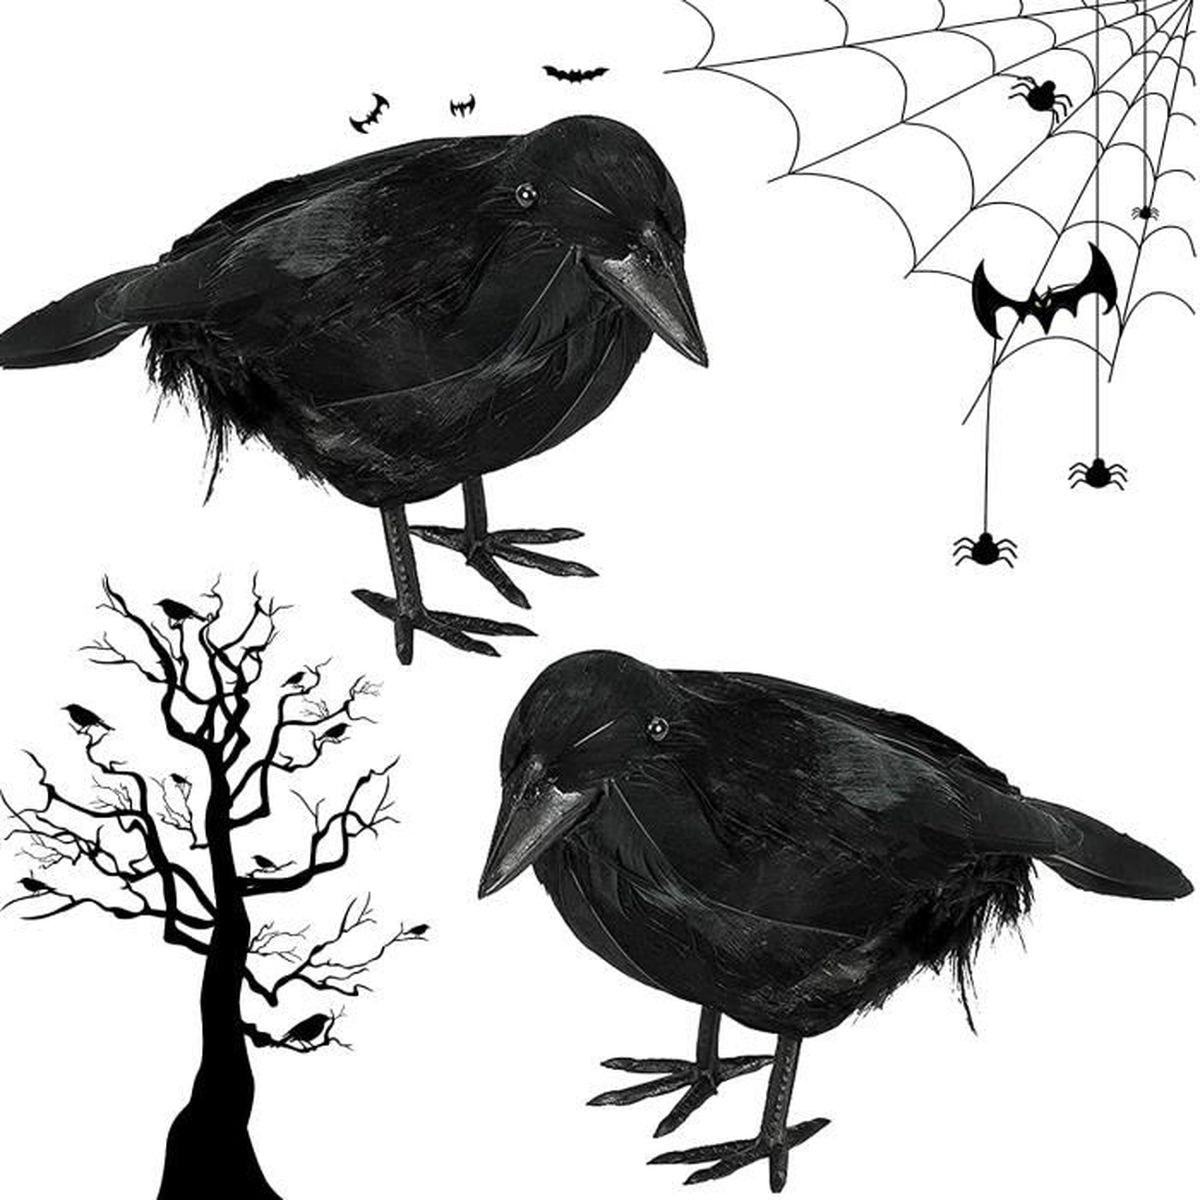 JIASHA Décoration Corbeau Noir 2 Pièces Halloween Corbeau Noir Corbeau à Plumes Noires d'halloween Corbeau Artificiel Réaliste Corbeau Prop Décorations pour Décoration d'halloween